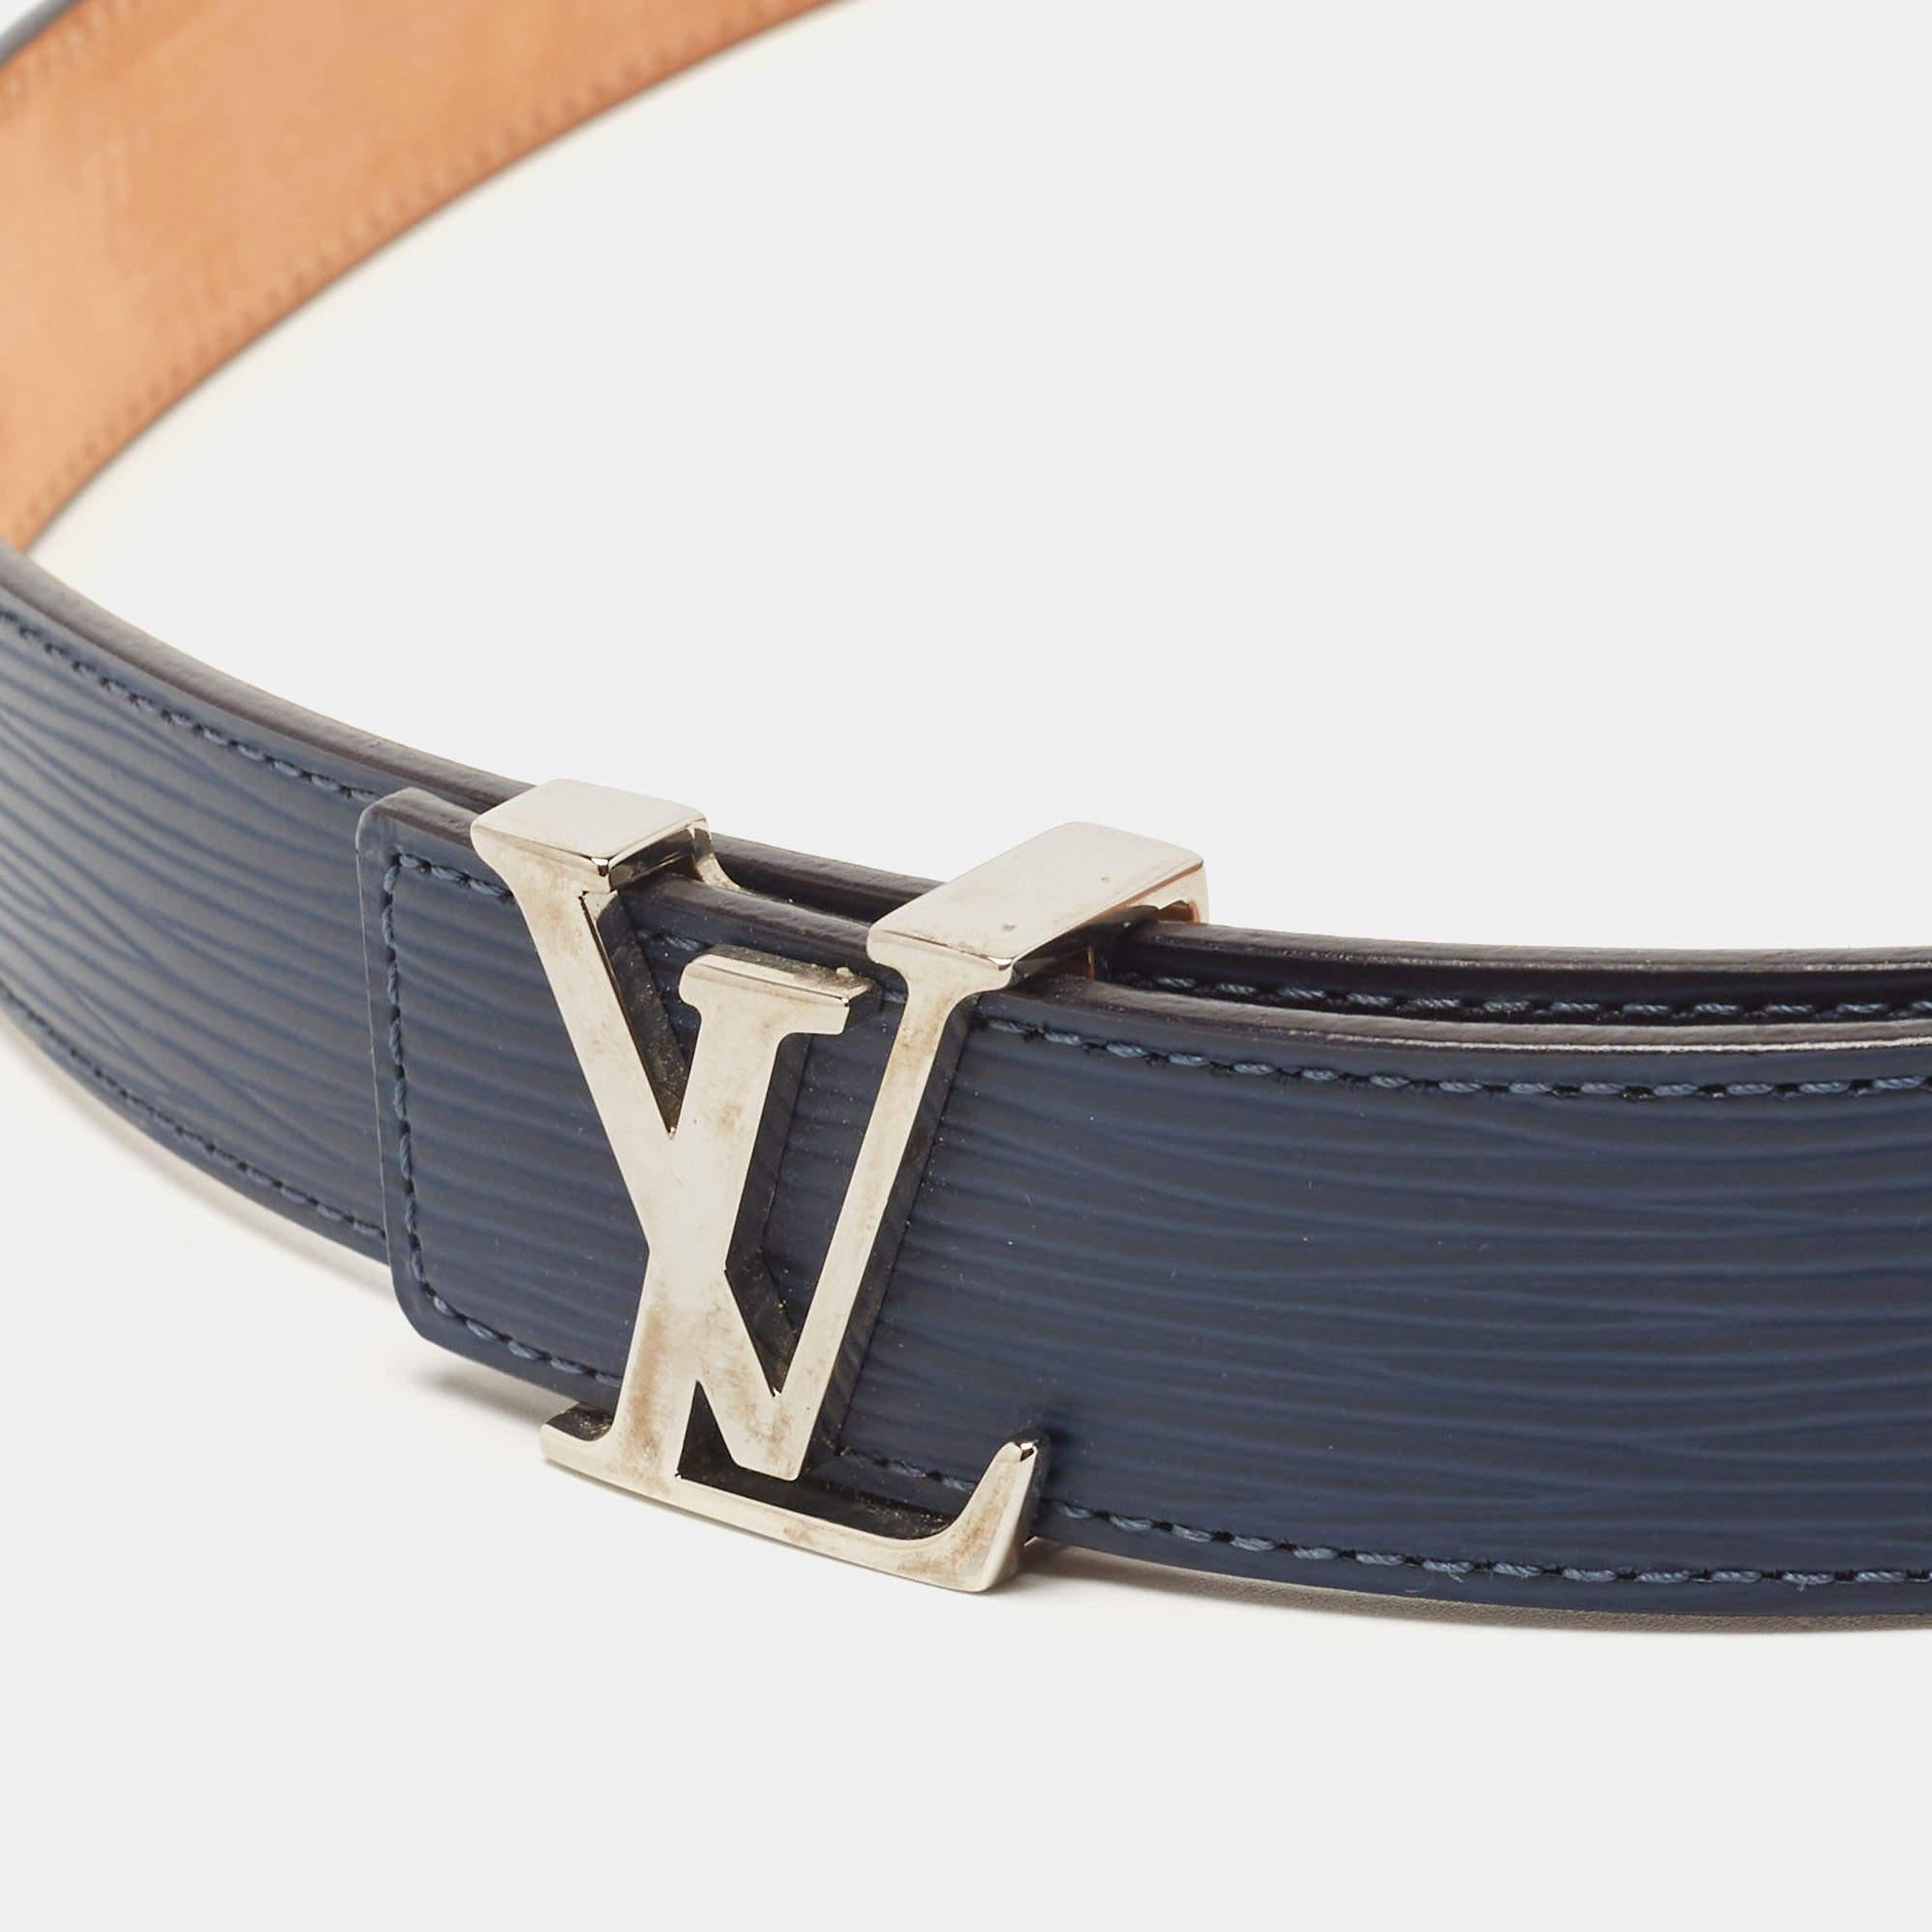 Blue Lv Belt - 8 For Sale on 1stDibs